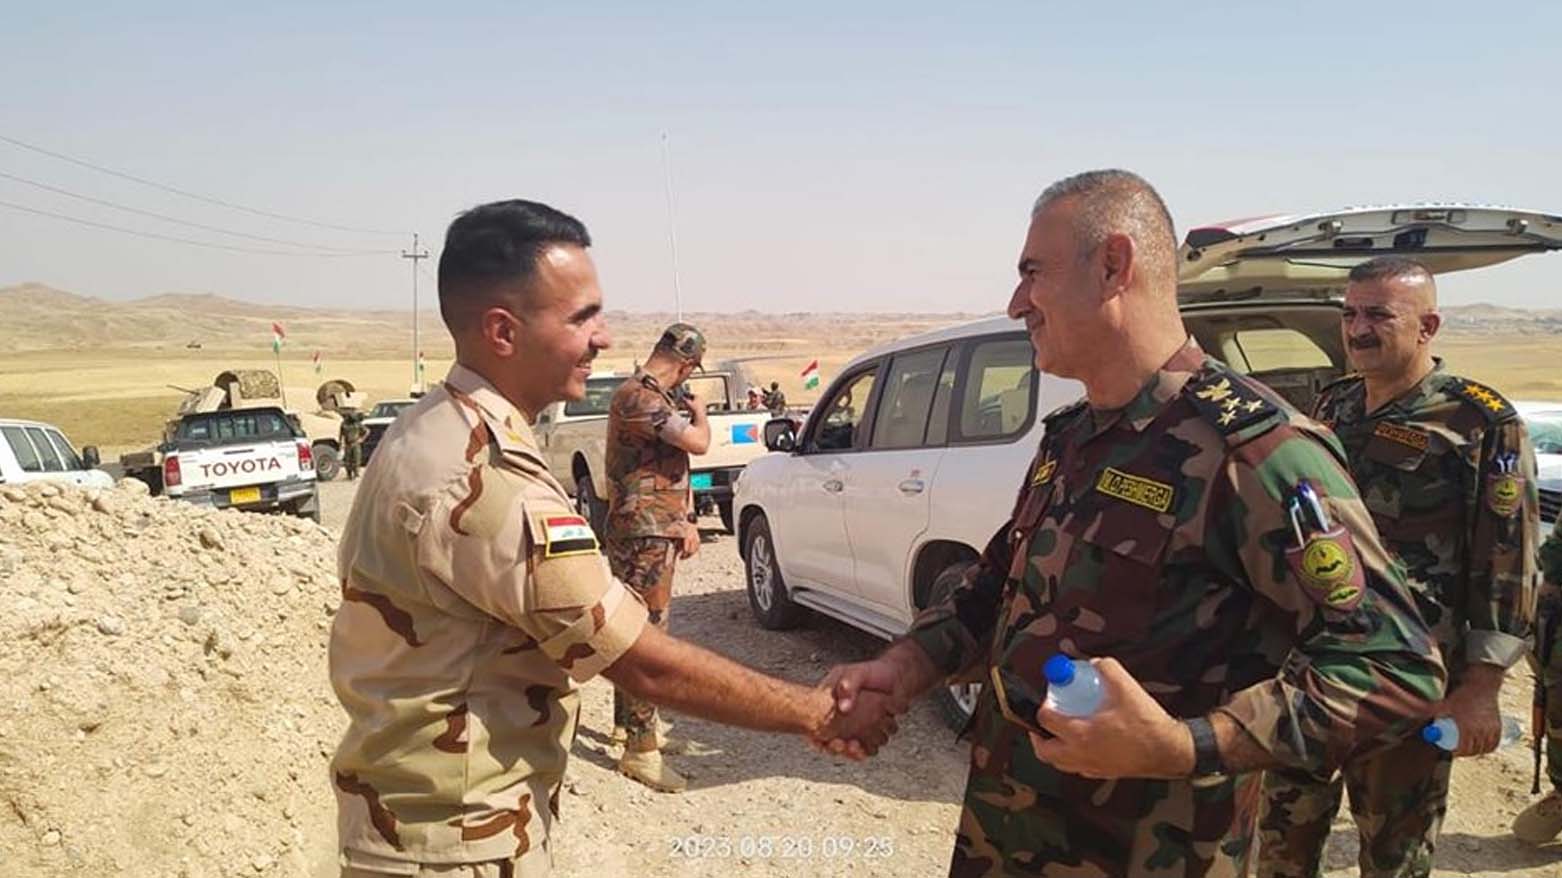 فرماندهان نیروی پیشمرگ و ارتش عراق در منطقه عملیاتی - عکس؛ وزارت امور پیشمرگ